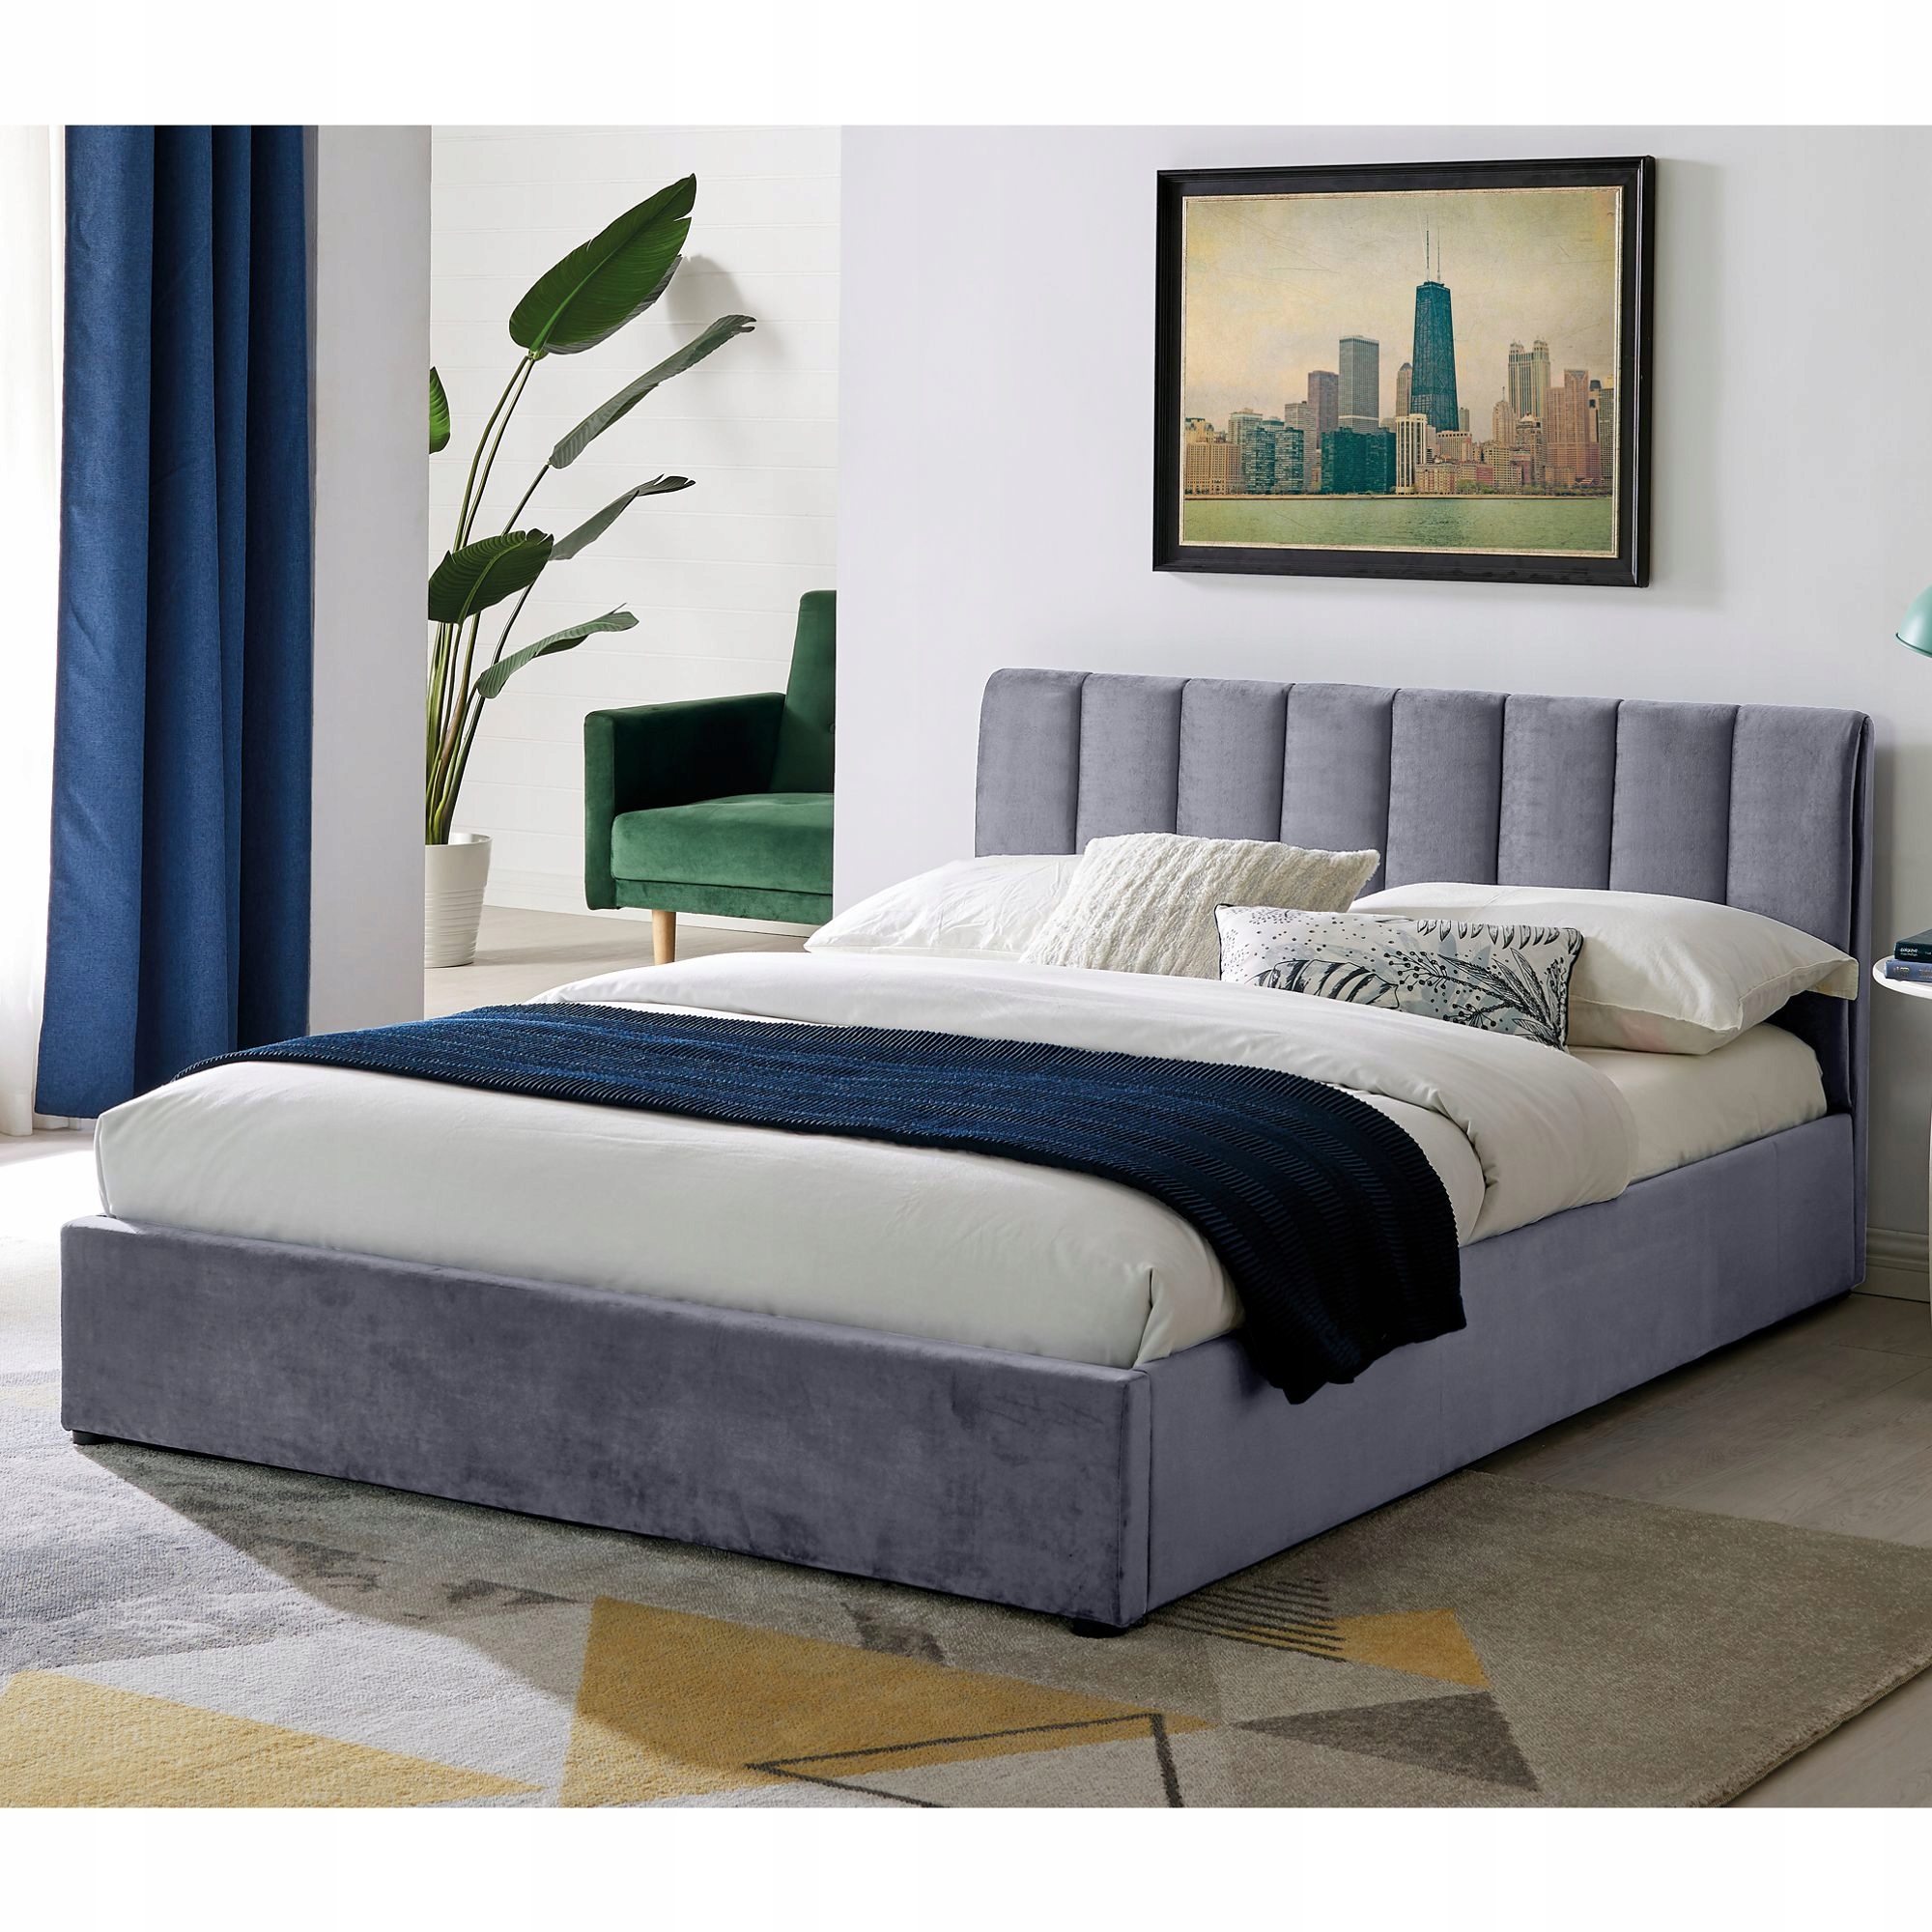 Łóżka - Największy wybór łóżek do sypialni | Allegro